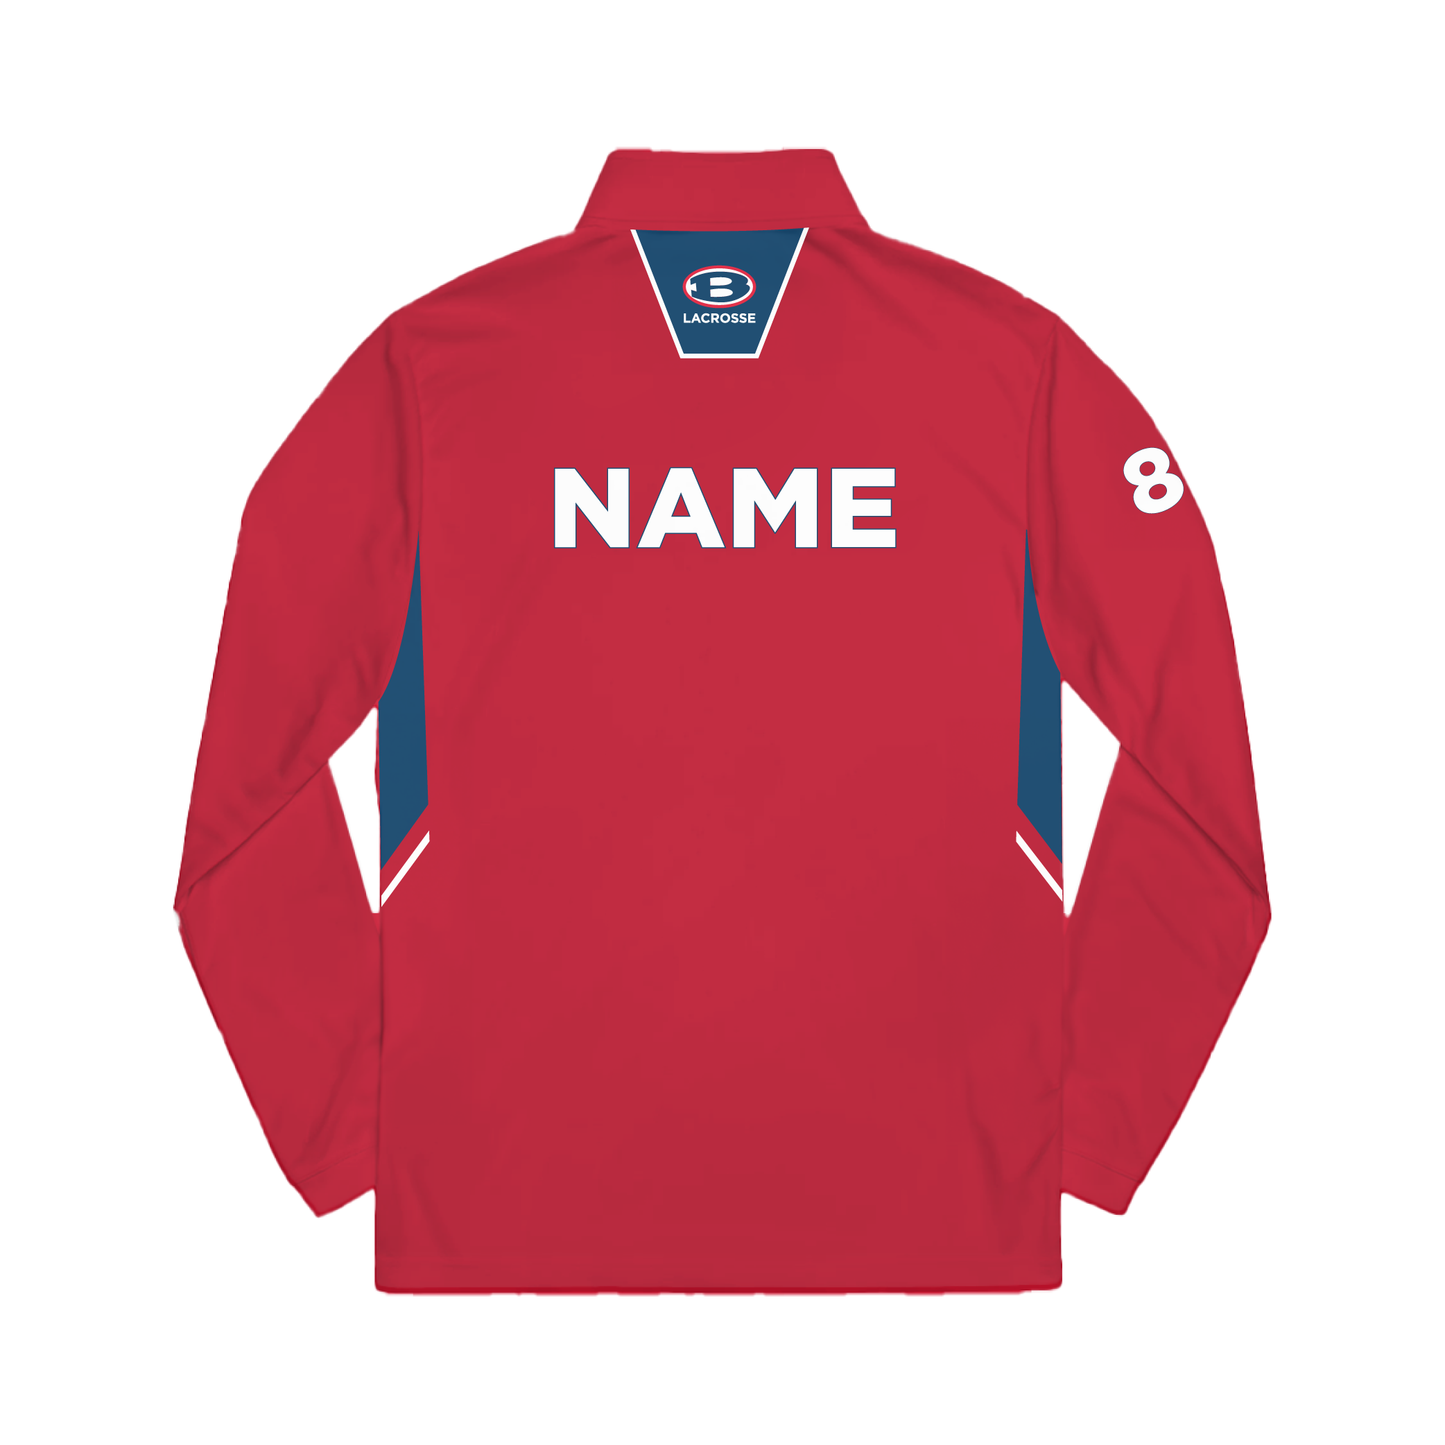 Bellport Lacrosse - CUSTOM Quarter Zip Pullover Sweatshirt